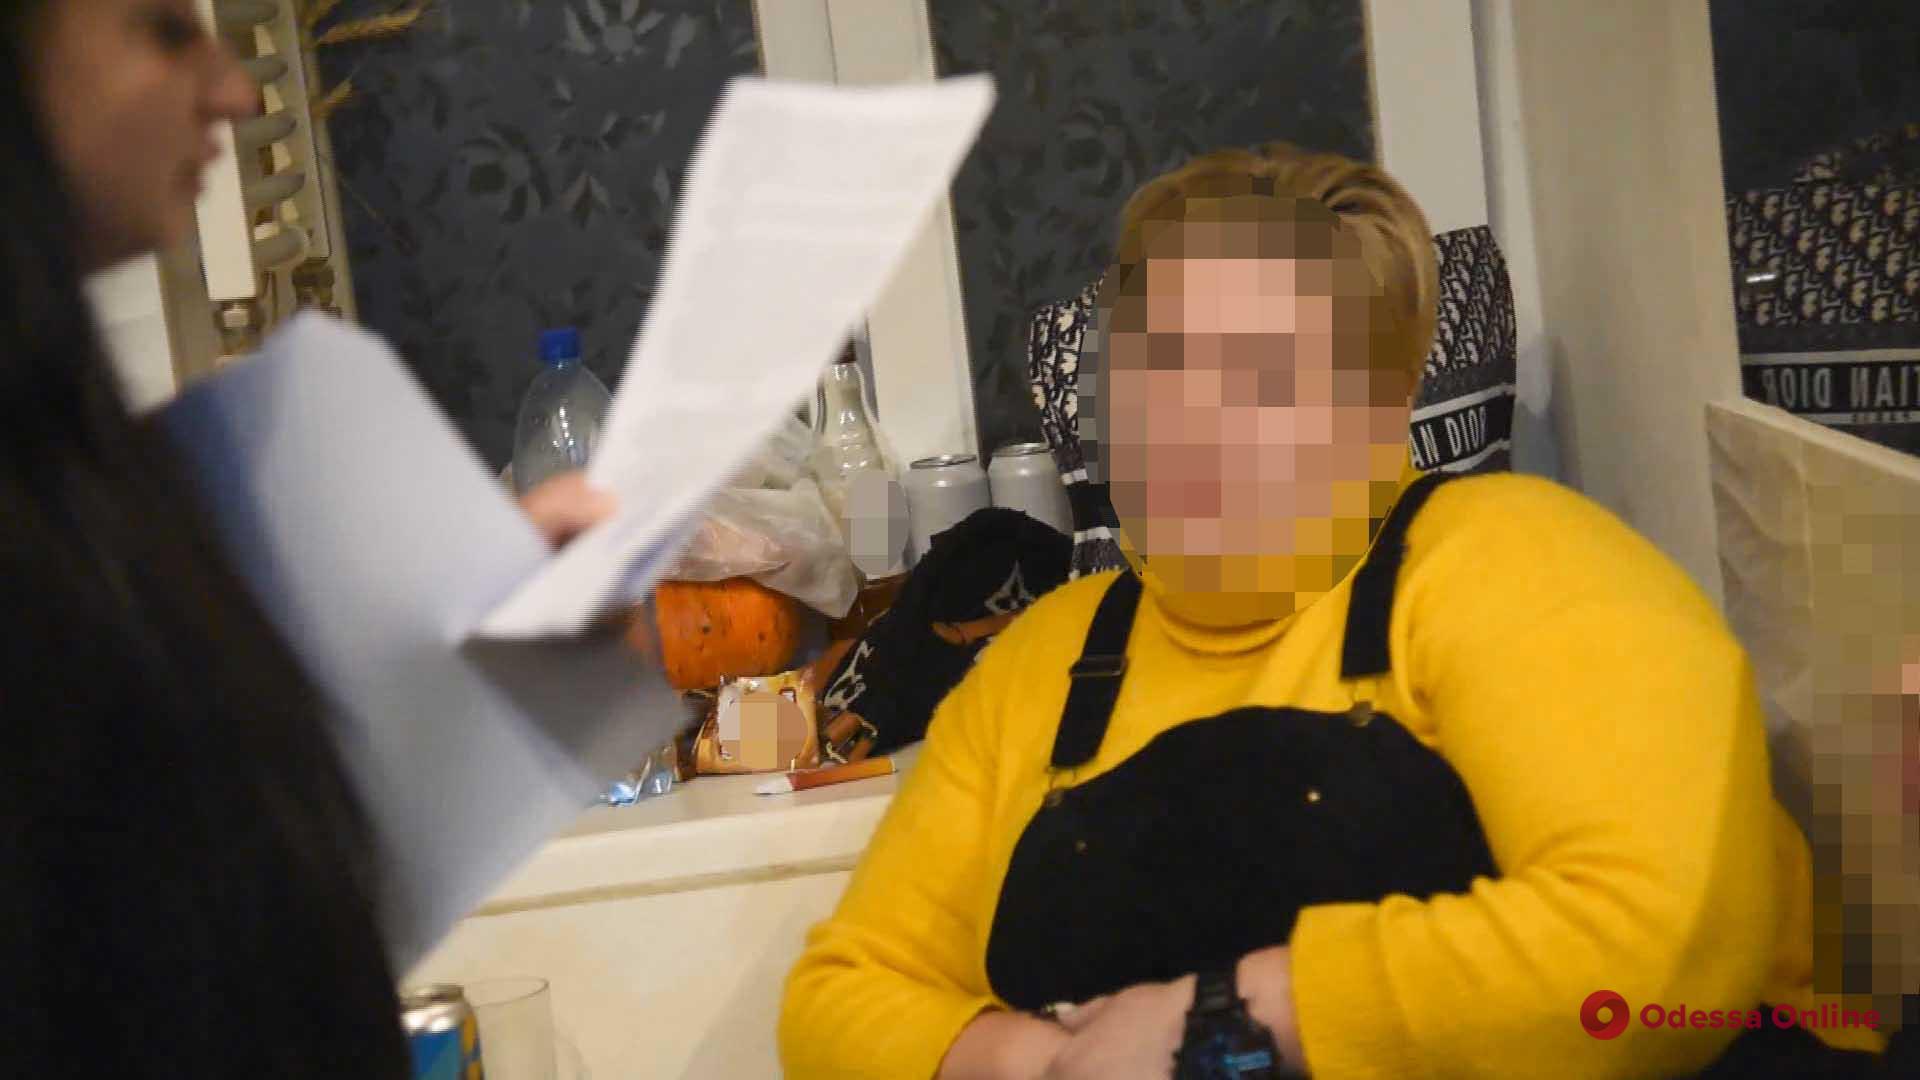 Одесские полицейские задержали гражданку Молдовы, занимавшуюся сутенерством (фото, видео)